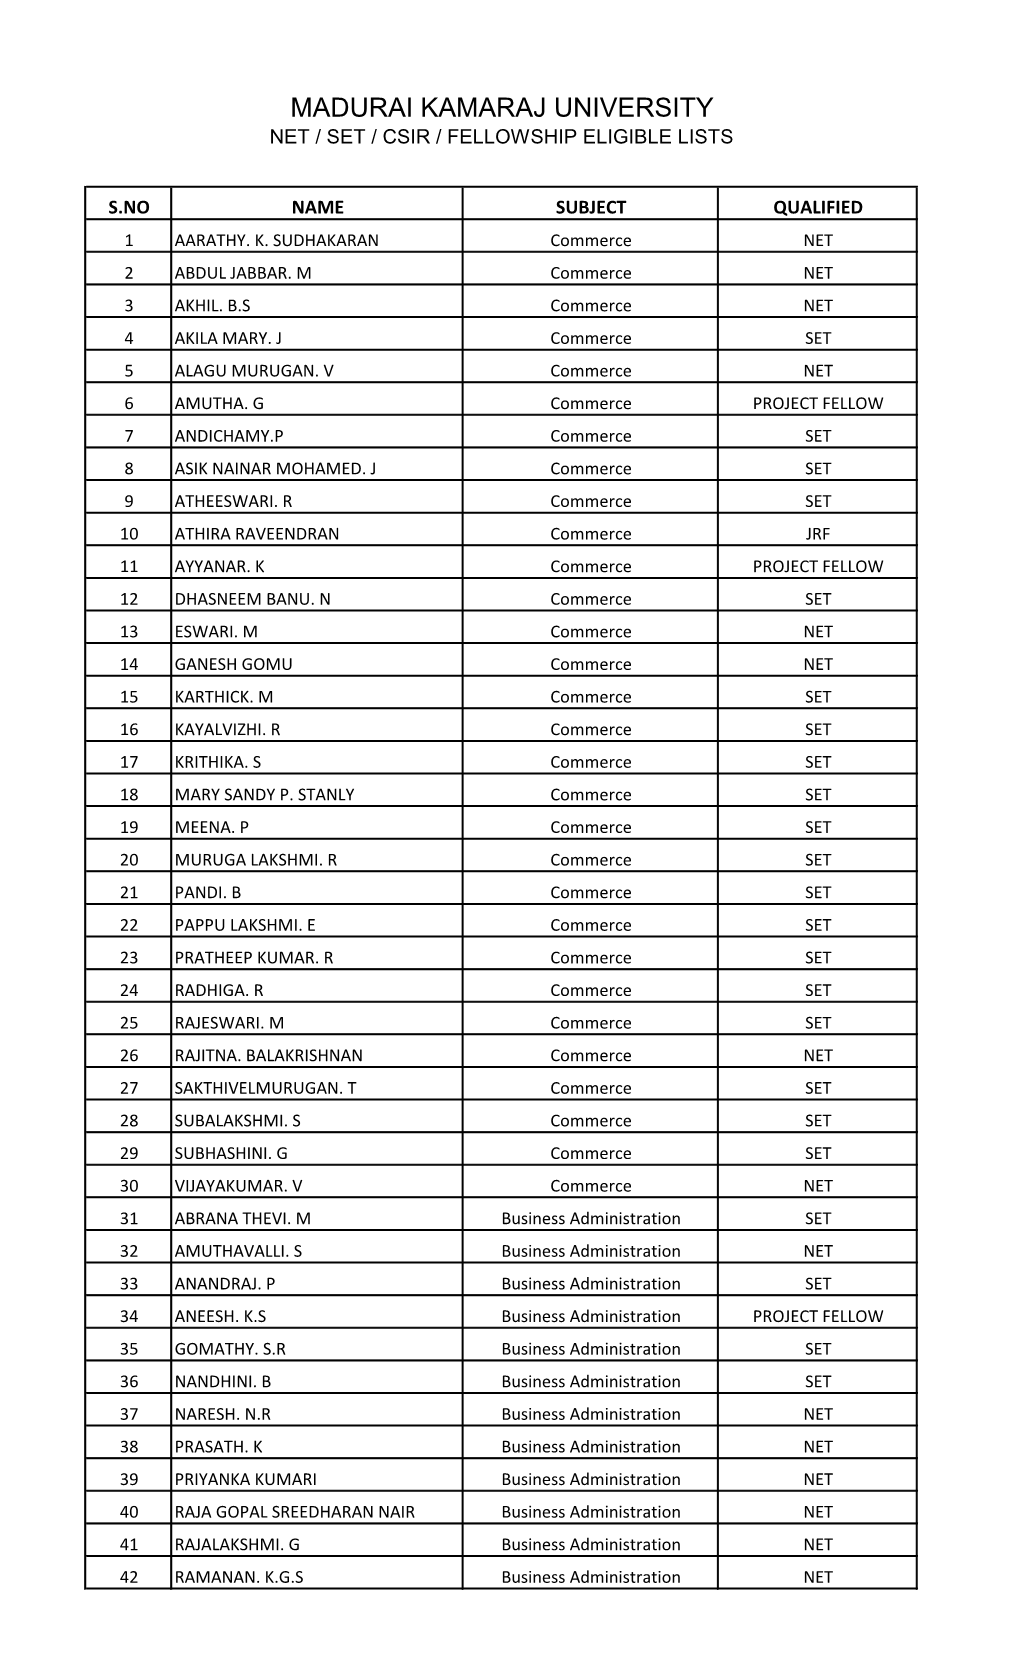 Madurai Kamaraj University Net / Set / Csir / Fellowship Eligible Lists